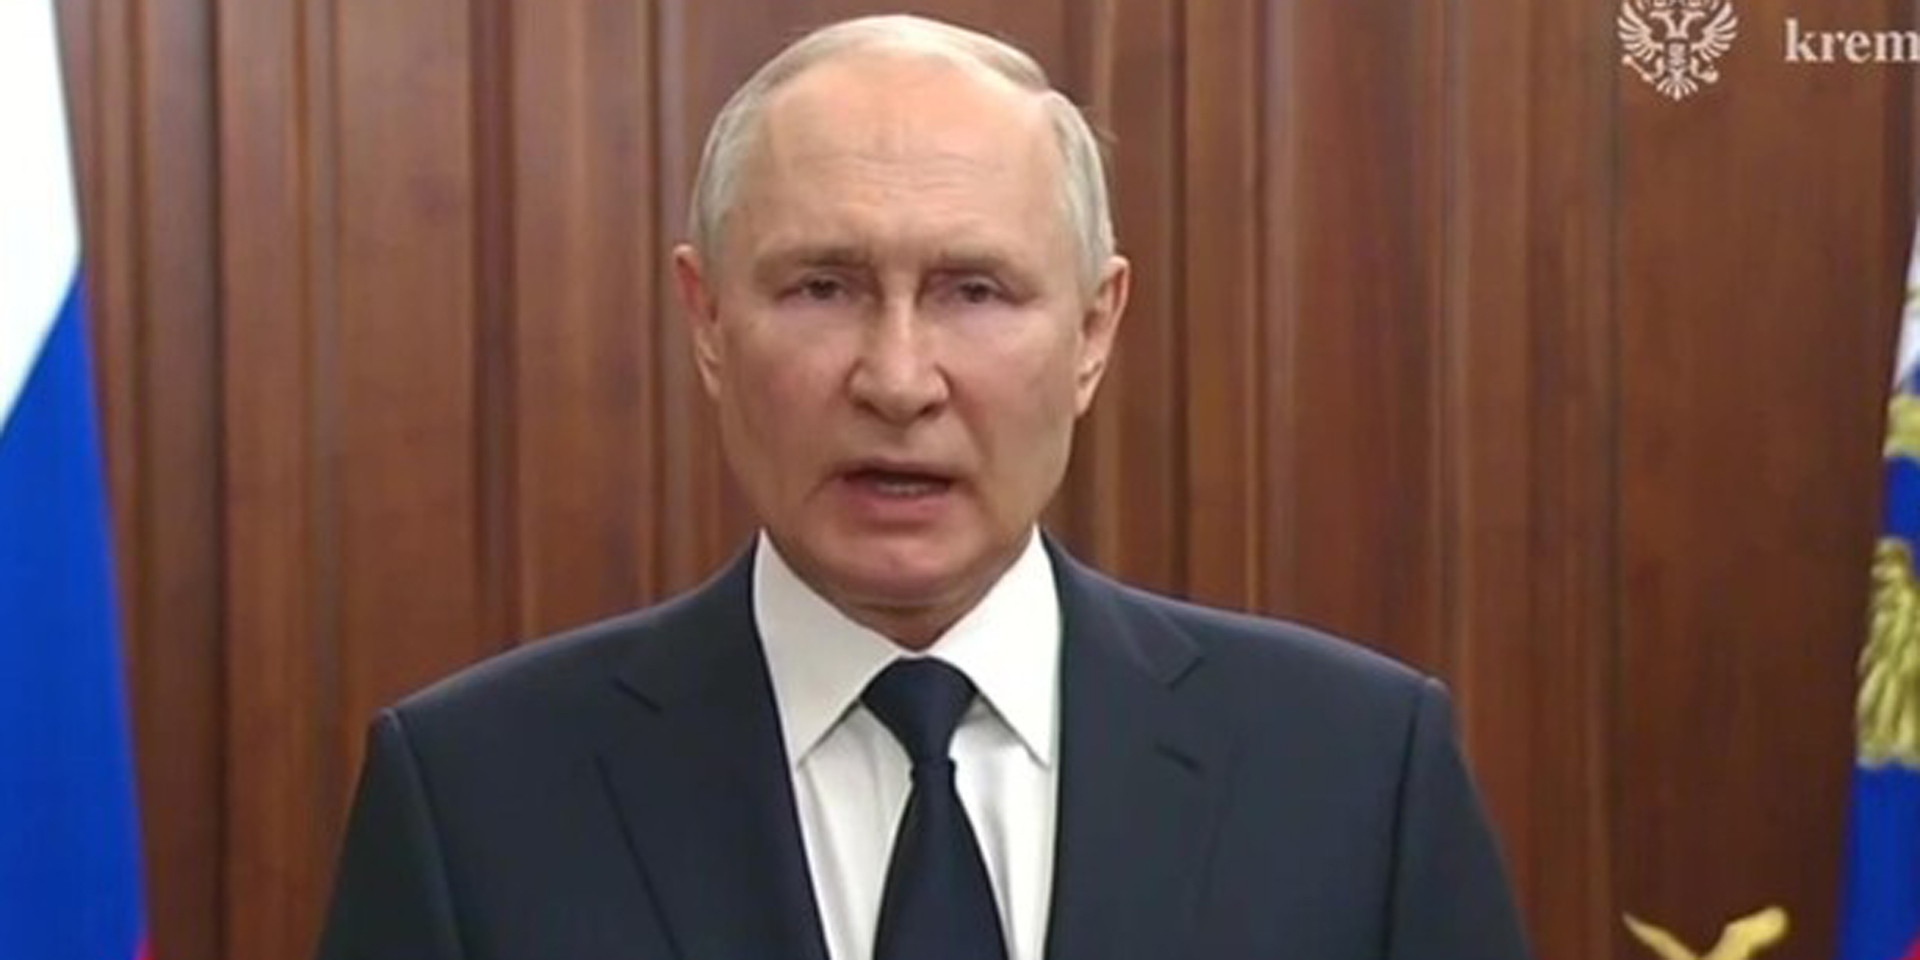 la gran bretagna autorizza kiev a usare le sue armi in russia. cremlino: “rischio escalation”